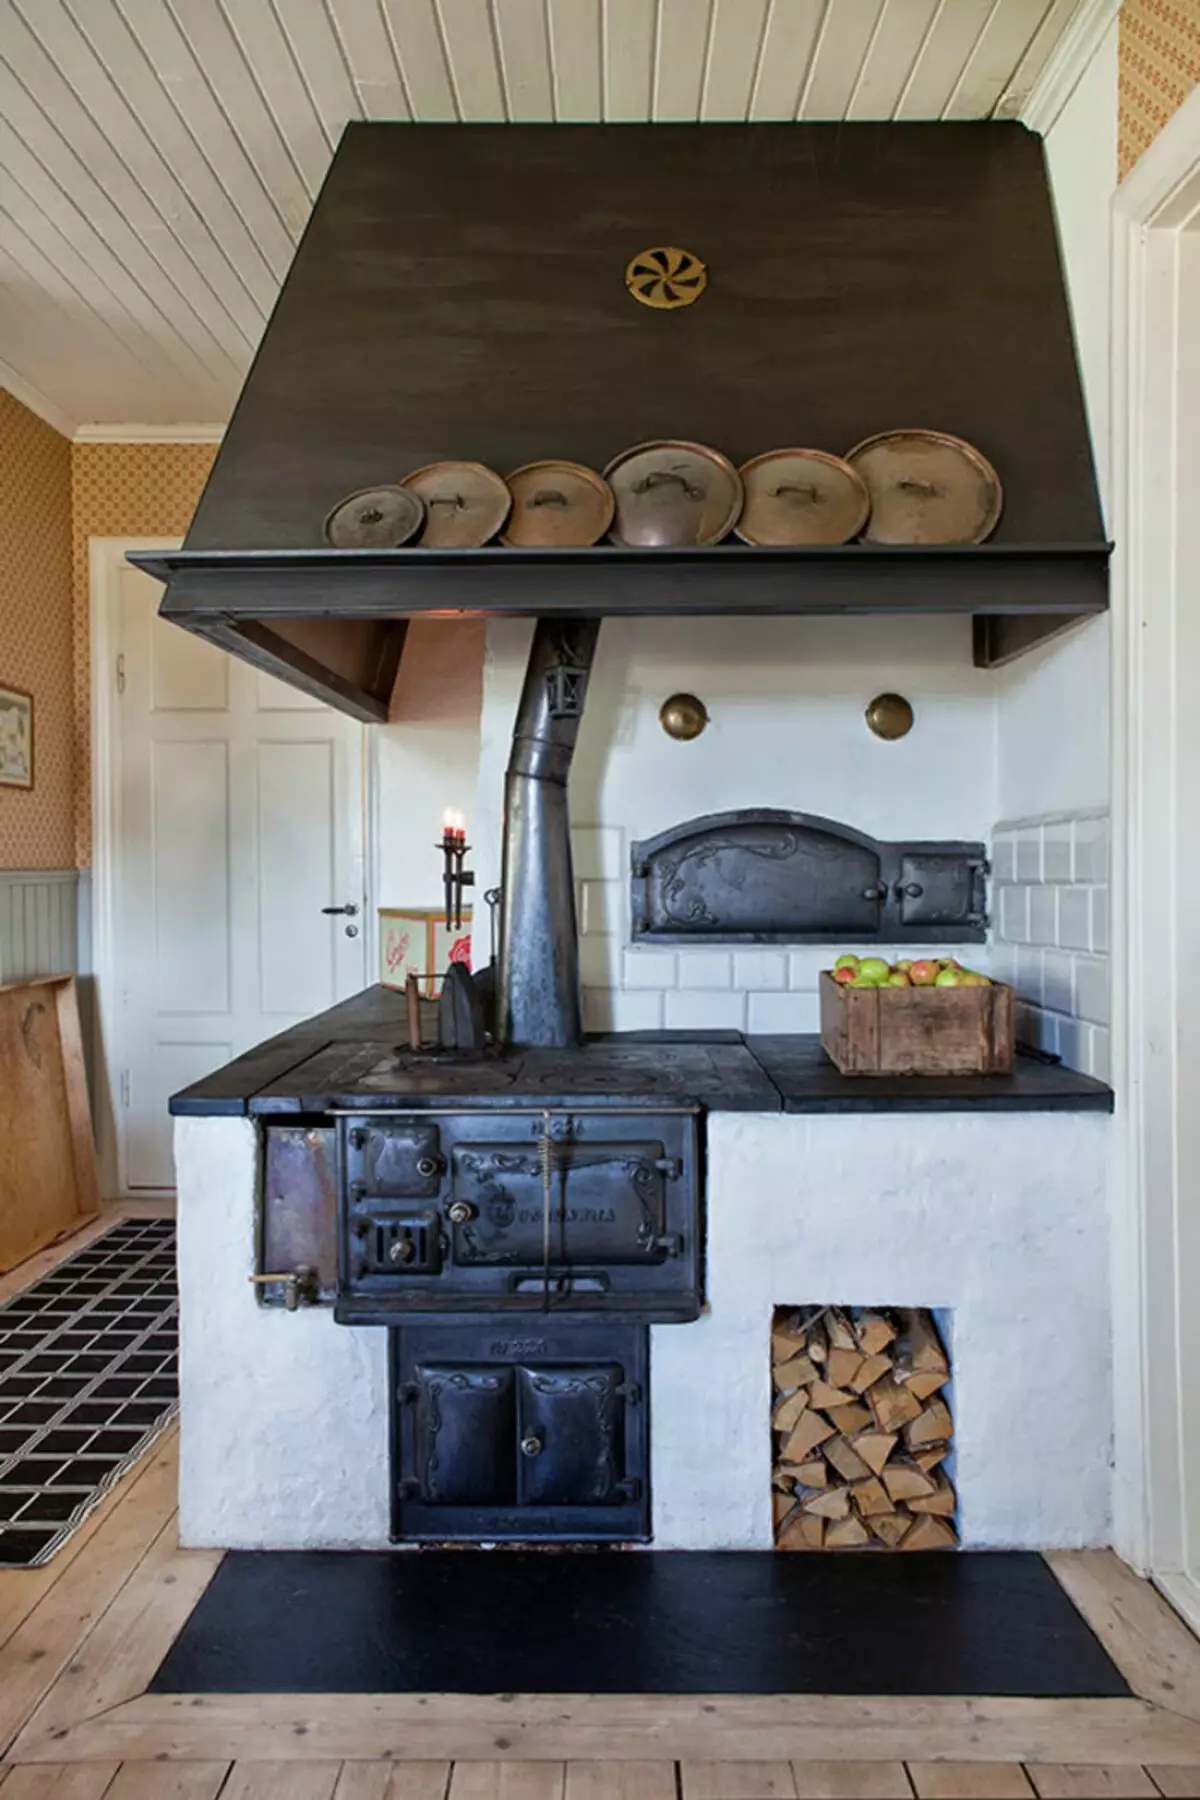 Cucina in una casa rustica (68 foto): idee di interior design in una vecchia casa rurale con una stufa. Disposizione e decorazione eco-promessati della cucina nel villaggio 9457_27